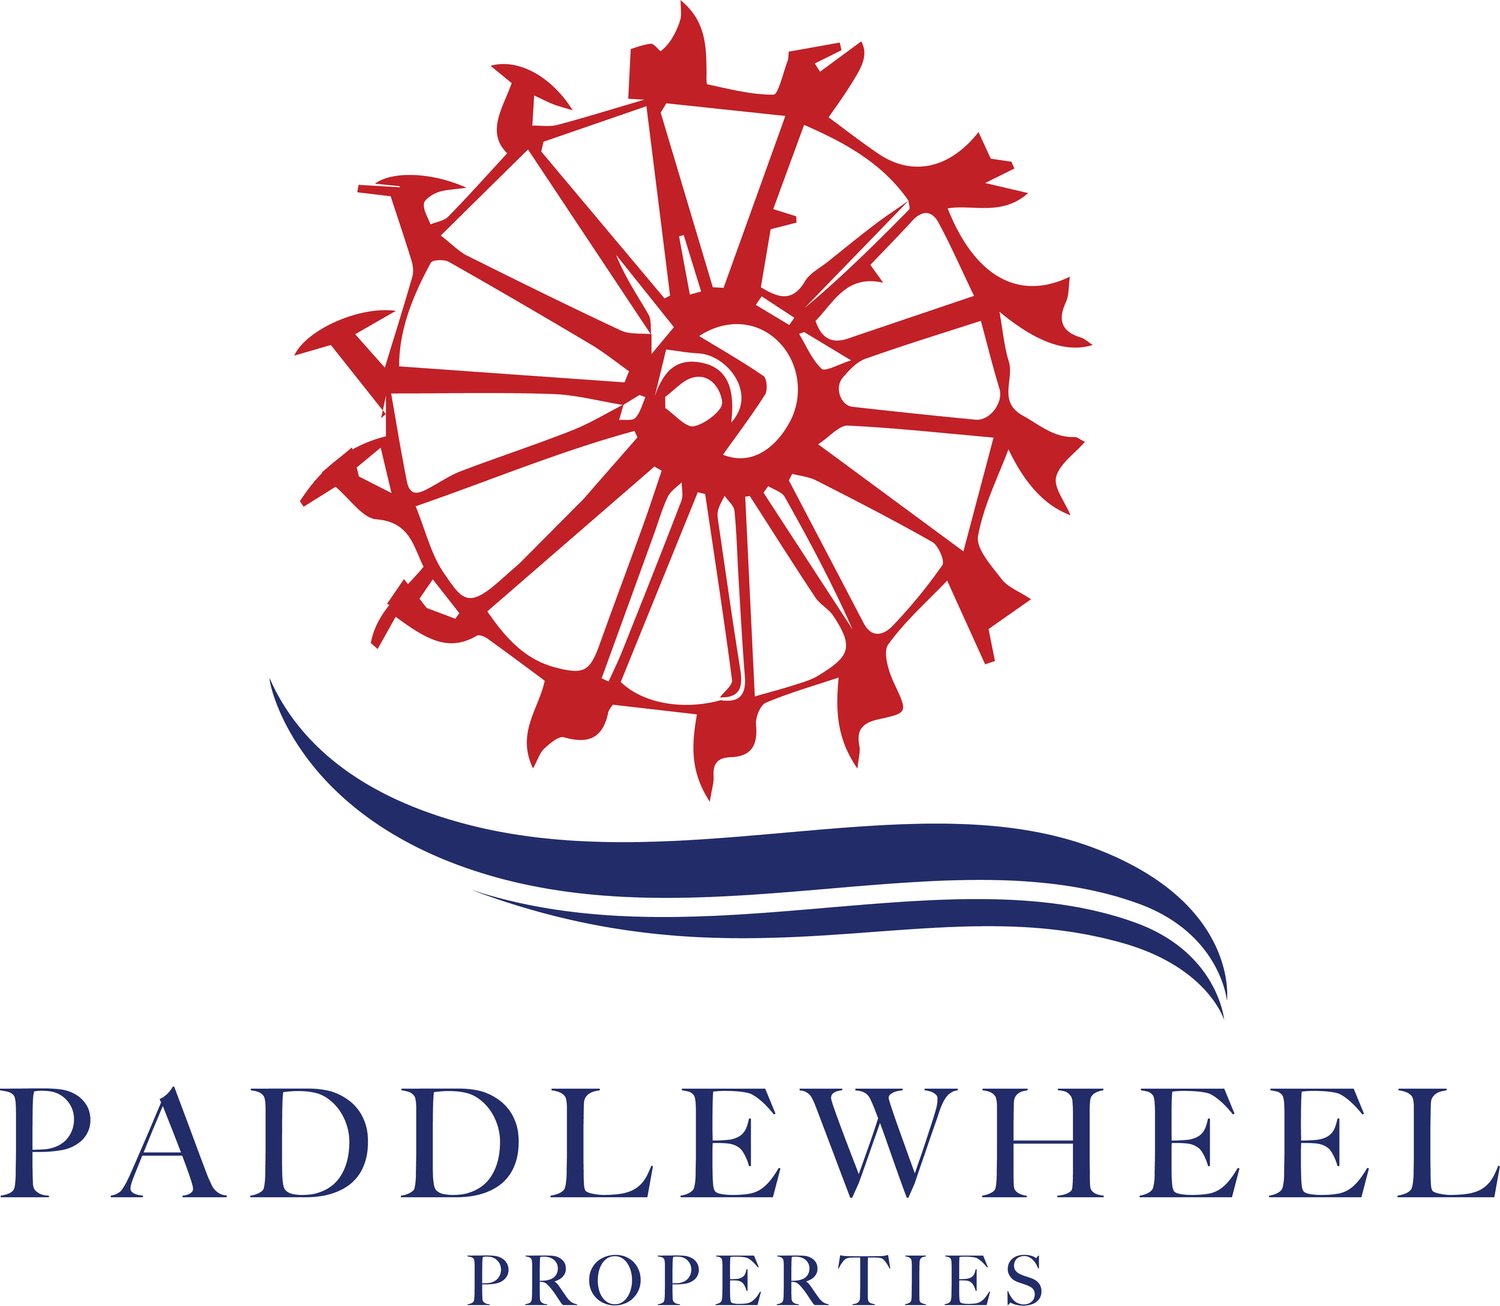 Paddlewheel Properties